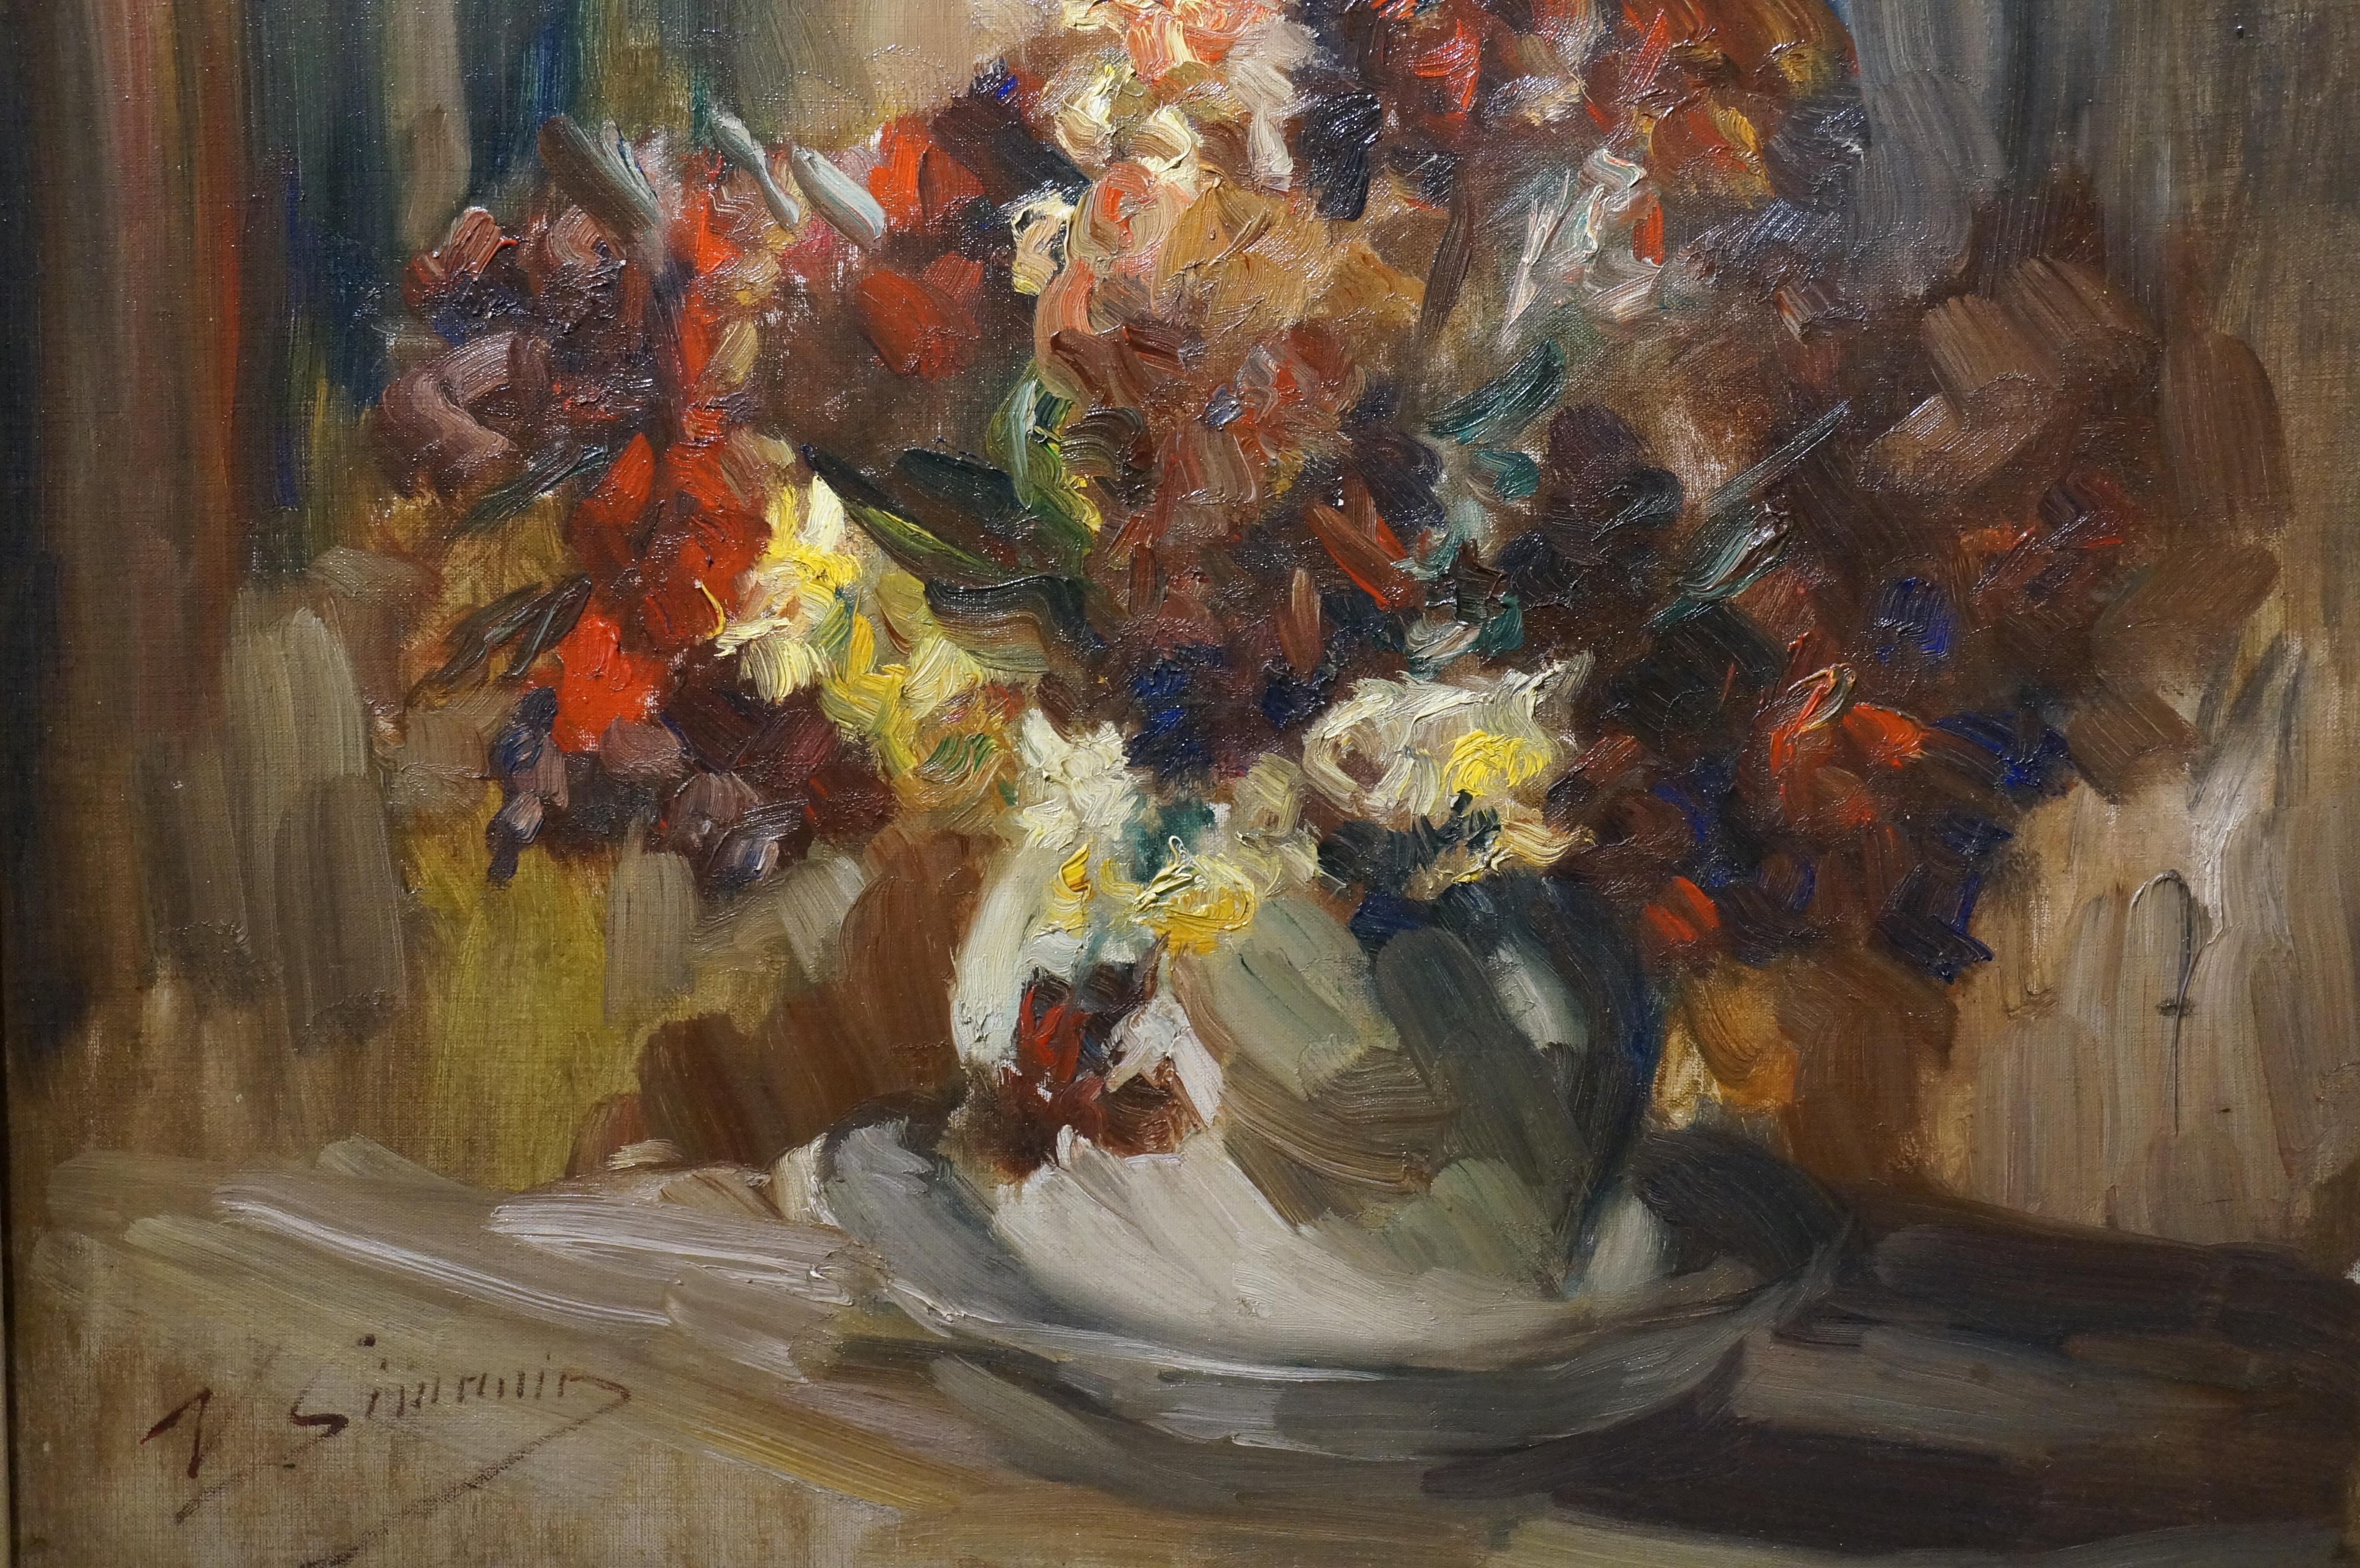 Peinture de style Stil-life de fleurs, Vicor Simonin, impressionniste, huile sur toile - Impressionnisme Painting par Victor Simonin